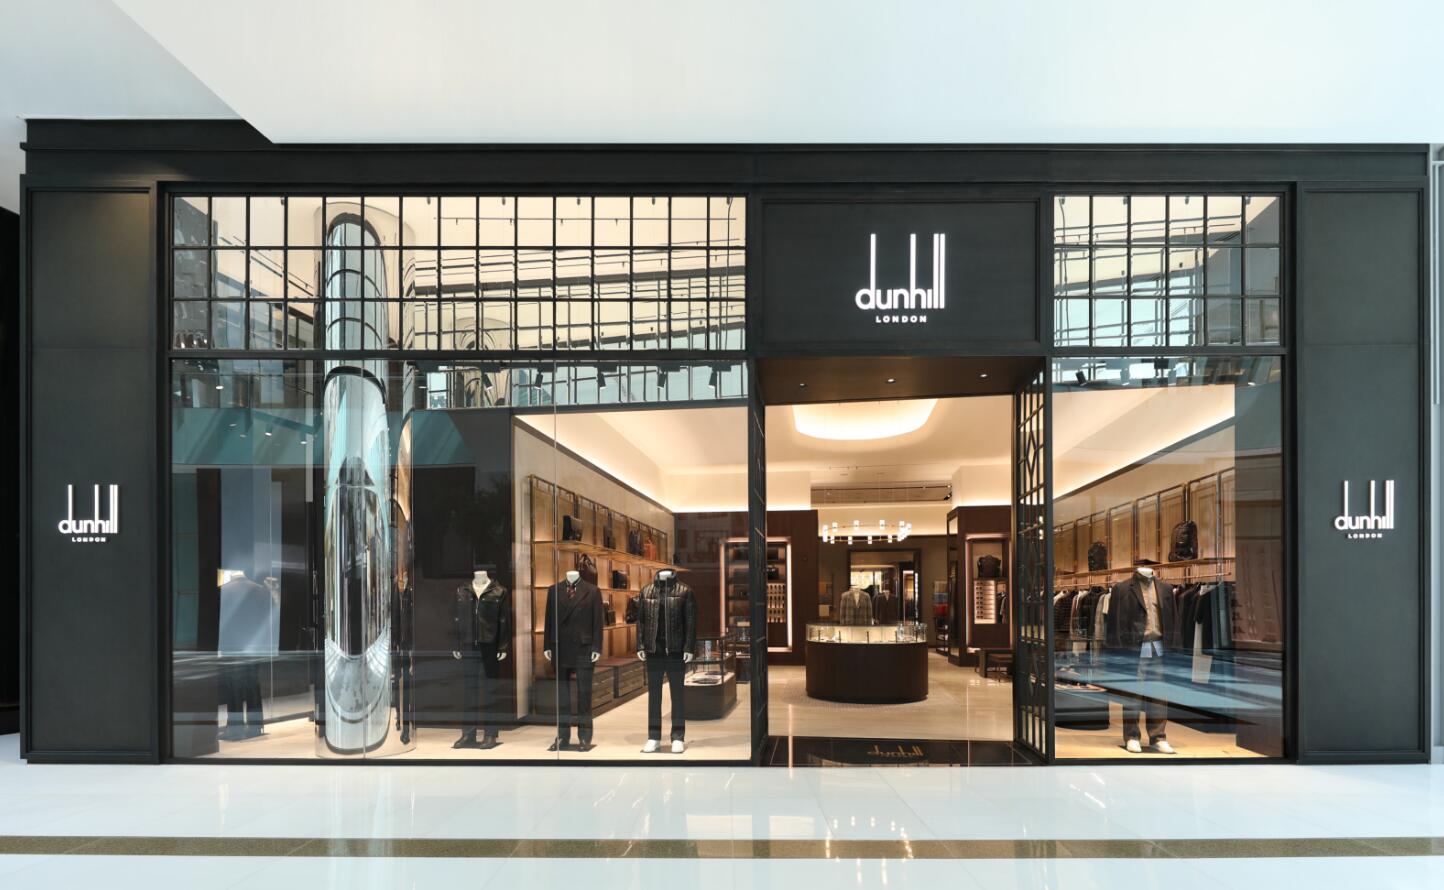 迪拜购物中心dunhill全新中东旗舰店隆重开幕